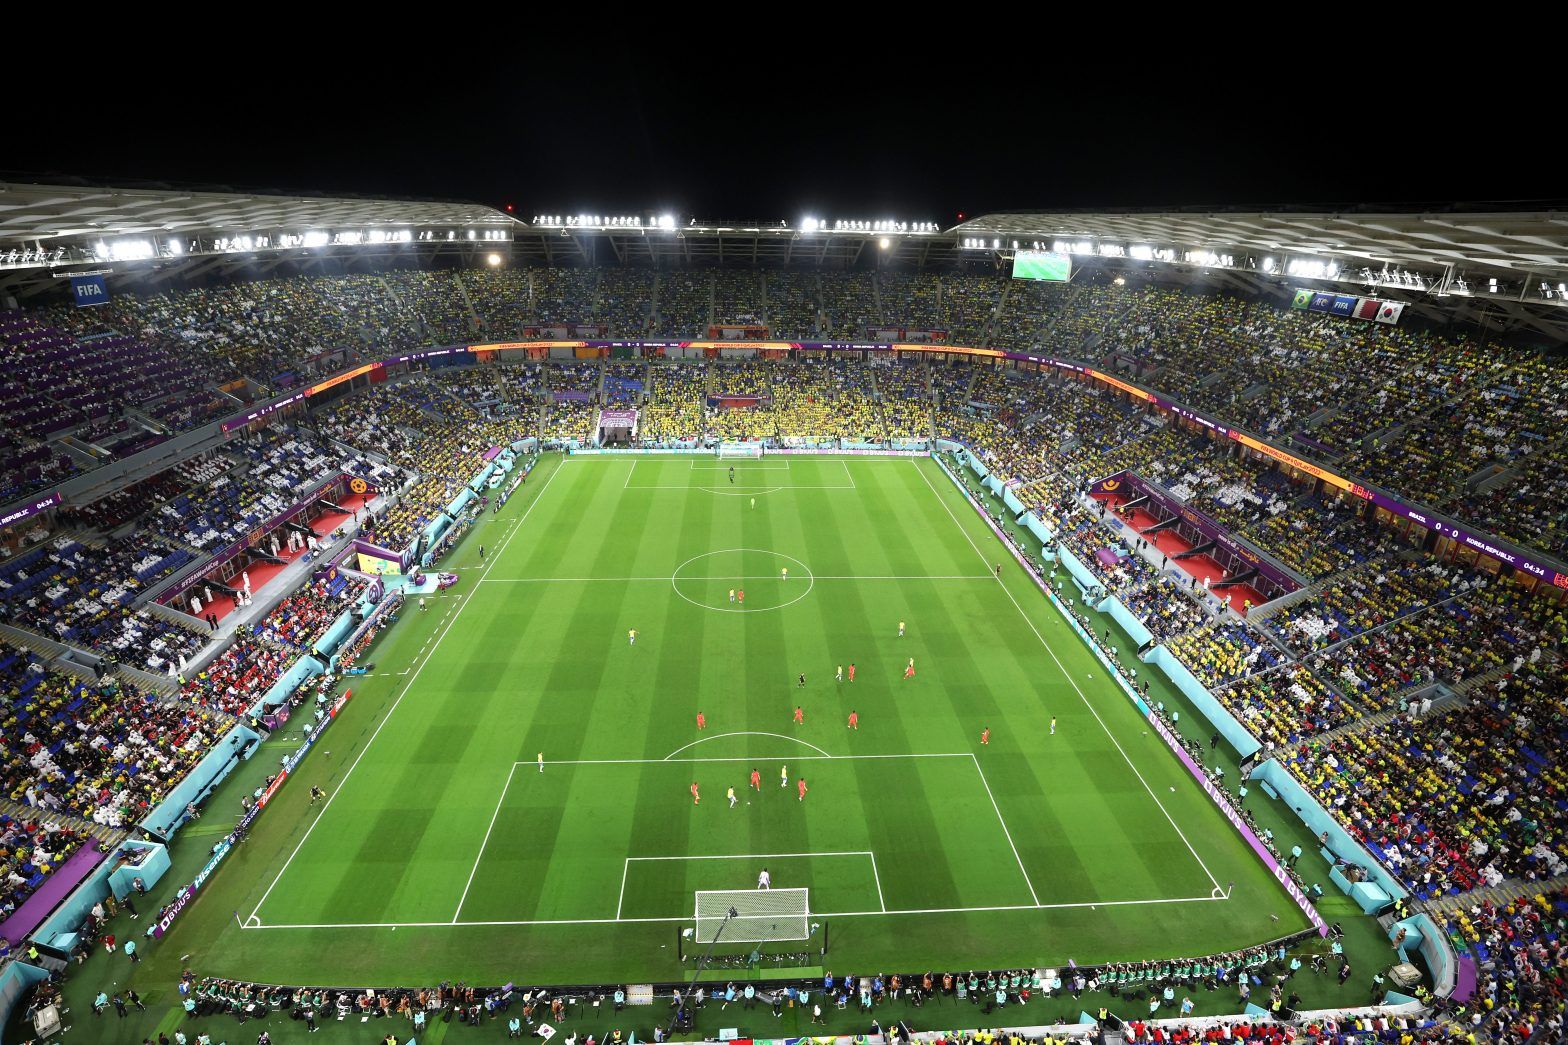 Copa Mundial de la FIFA: el primer estadio temporal del mundo, el Estadio 974 desmantelado, los contenedores se enviarán a América del Sur para ayudar a la candidatura de 2030 - Informes